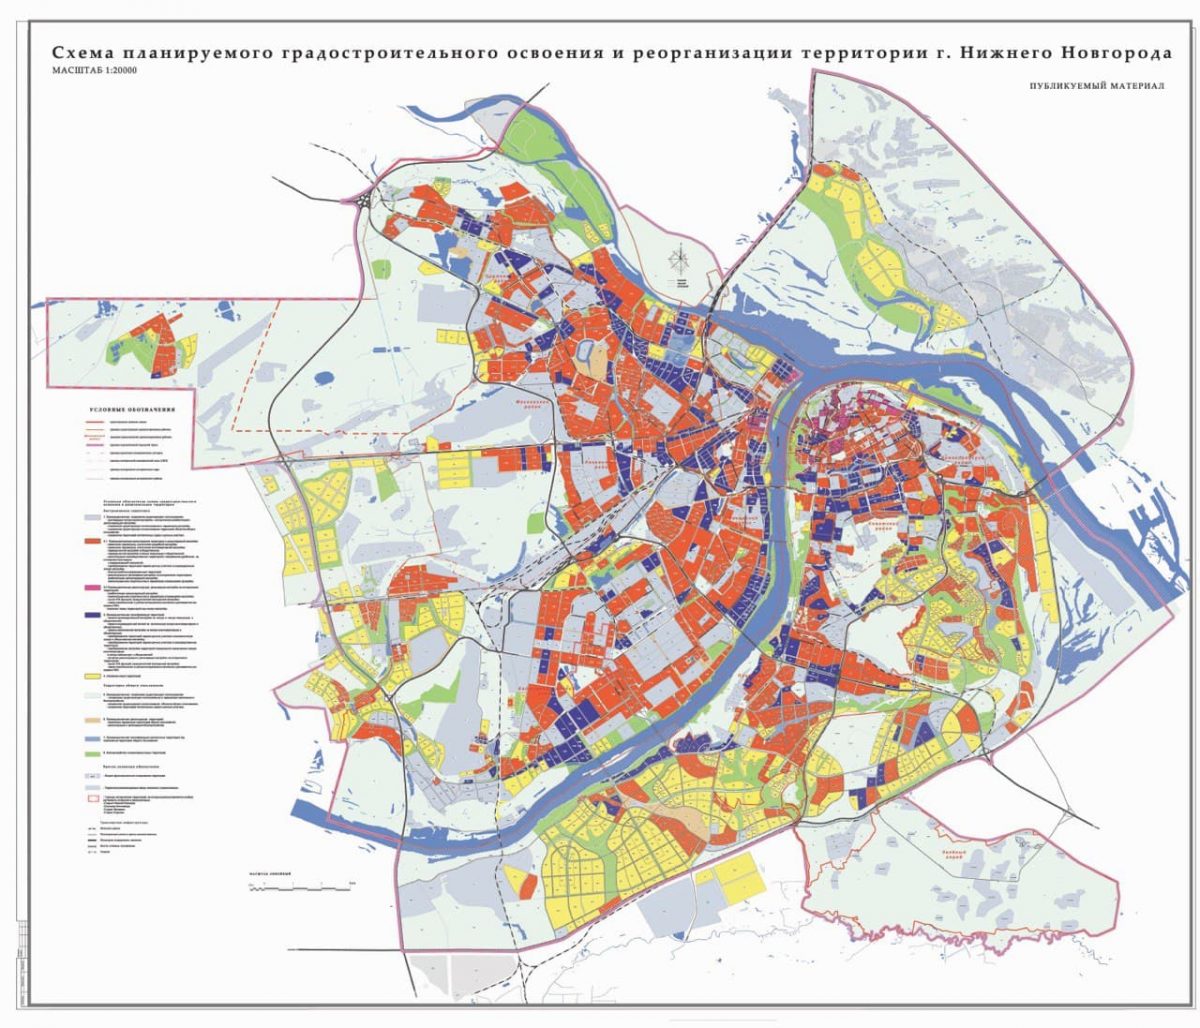 В Нижнем Новгороде исчезнет большинство садовых участков 21 июня 2021 года